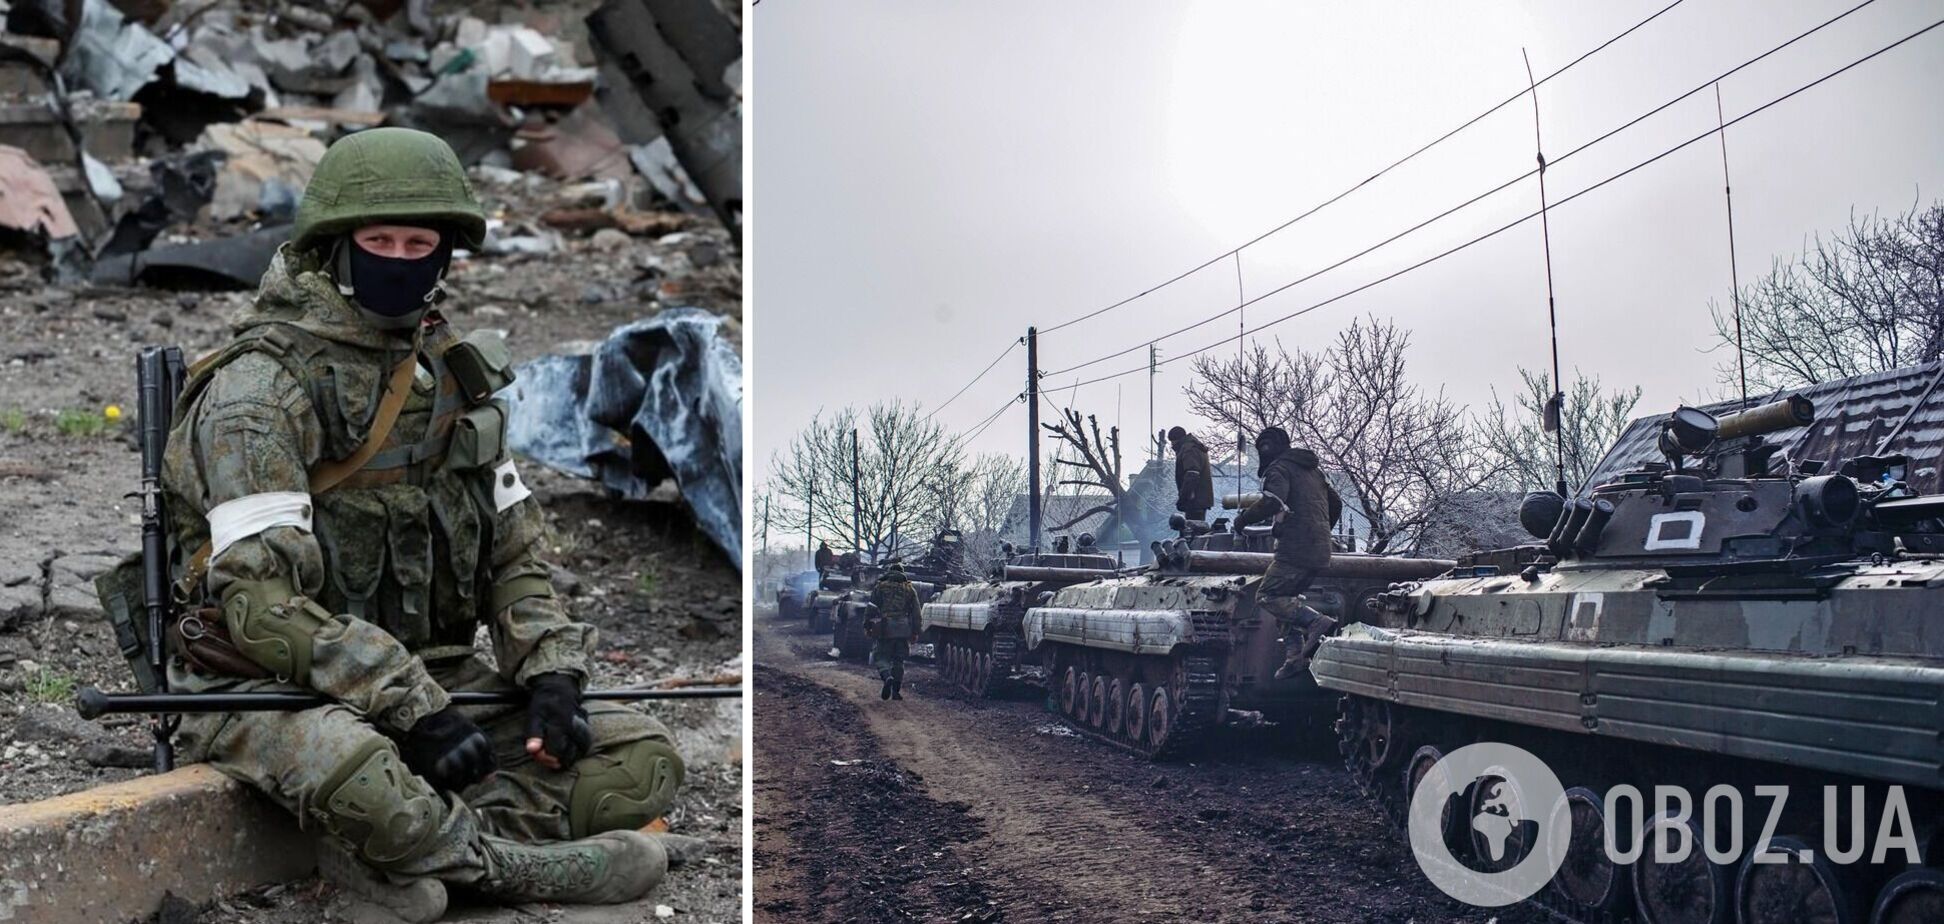 Прикрываются людьми: войска РФ обустроили полигон в частном секторе под Мариуполем